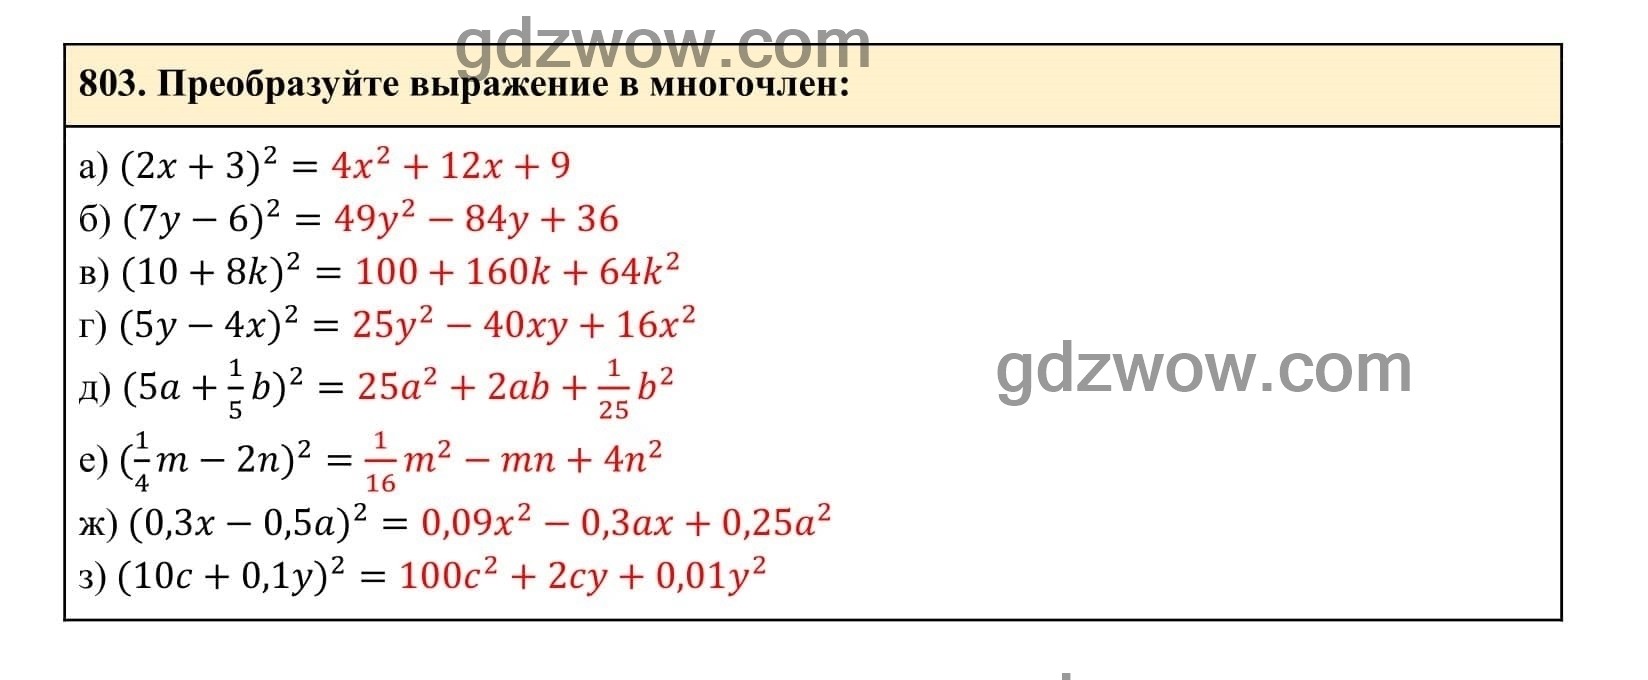 Упражнение 803 - ГДЗ по Алгебре 7 класс Учебник Макарычев (решебник) - GDZwow